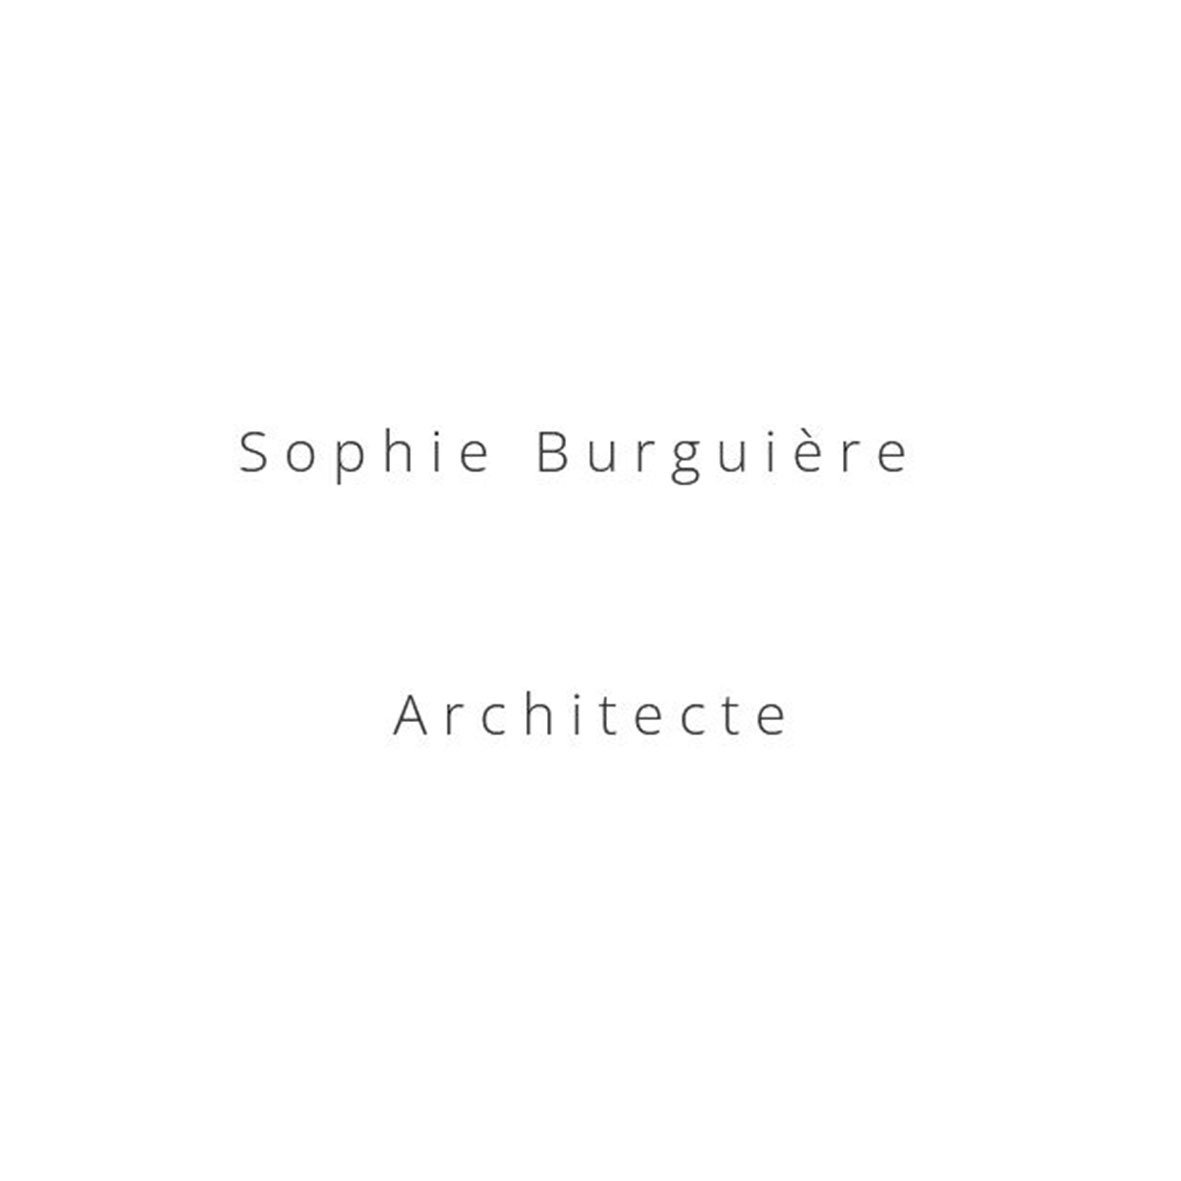 Sophie Burguière